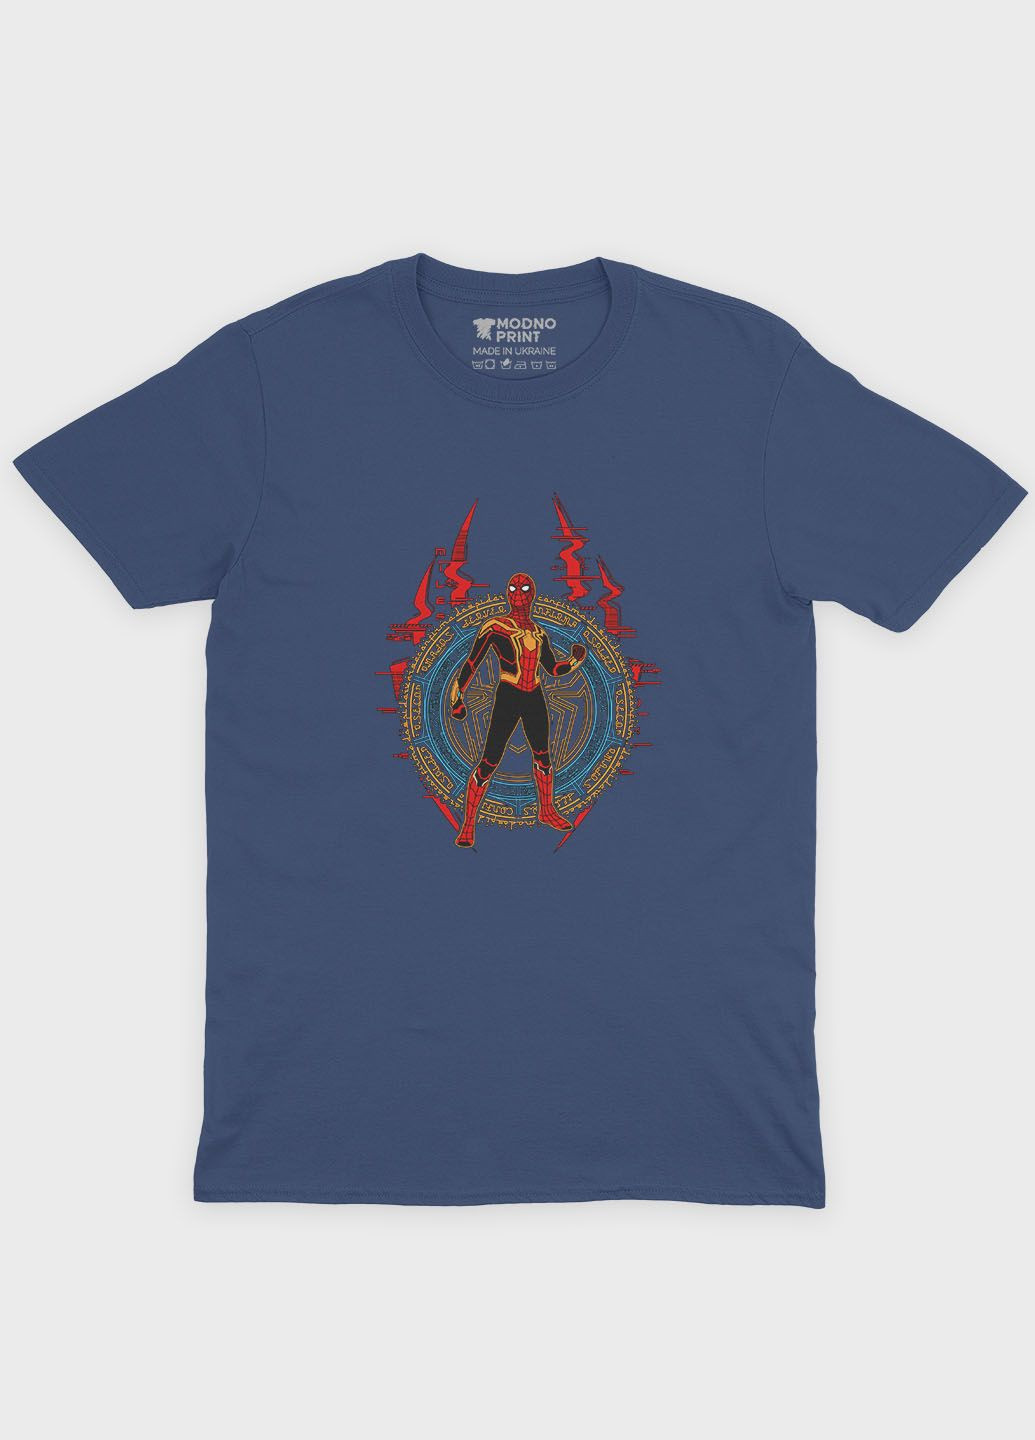 Темно-синяя демисезонная футболка для девочки с принтом супергероя - человек-паук (ts001-1-nav-006-014-011-g) Modno